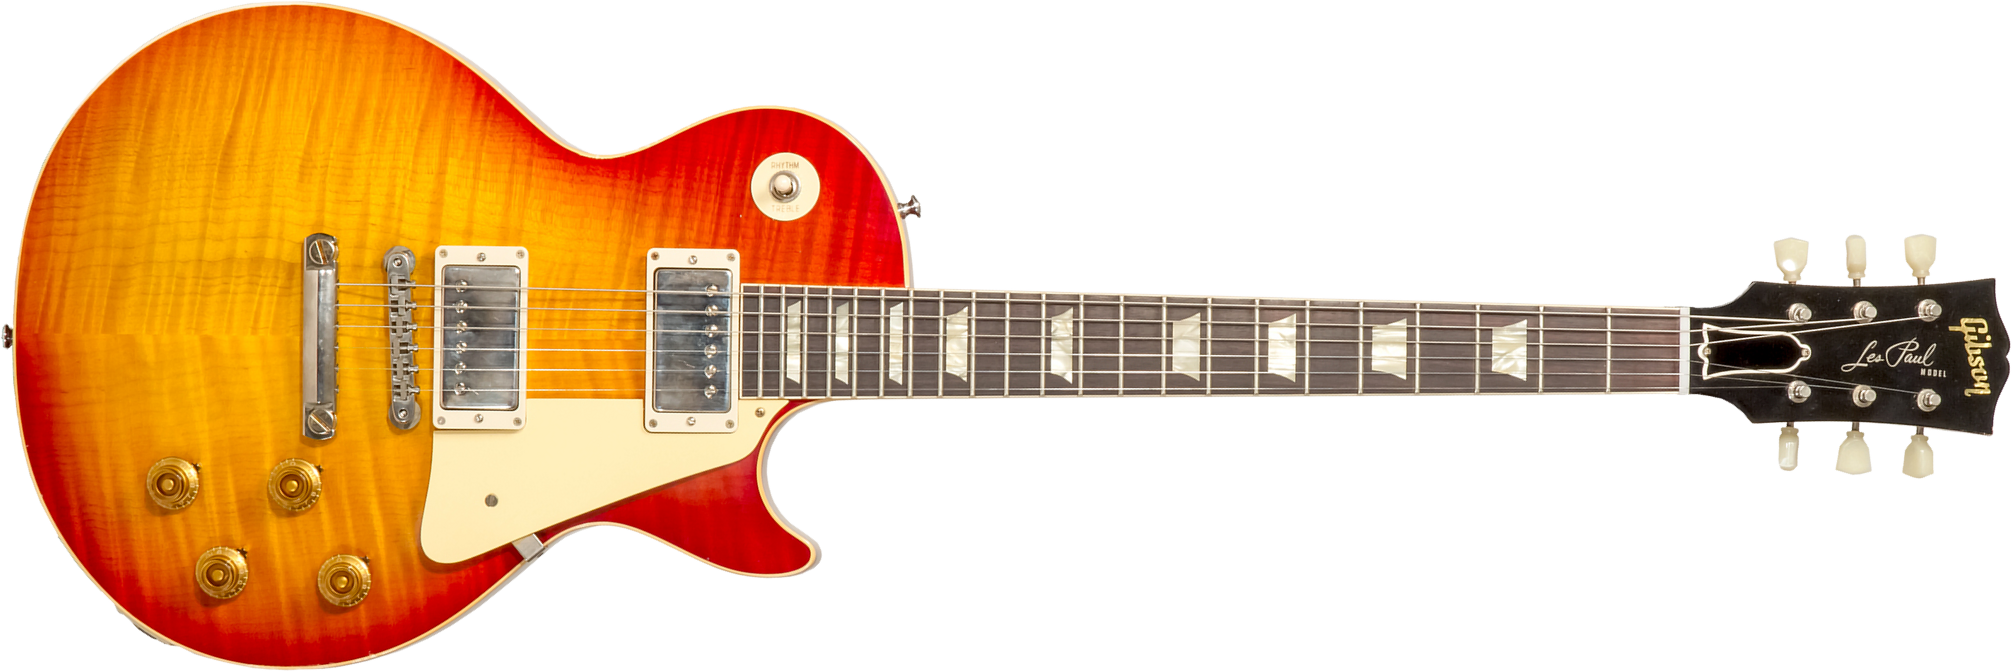 Gibson Custom Shop M2m Les Paul Standard 1959 Reissue 2h Ht Rw #932649 - Murphy Lab Light Aged Ice Tea Fade - Guitarra eléctrica de corte único. - Mai